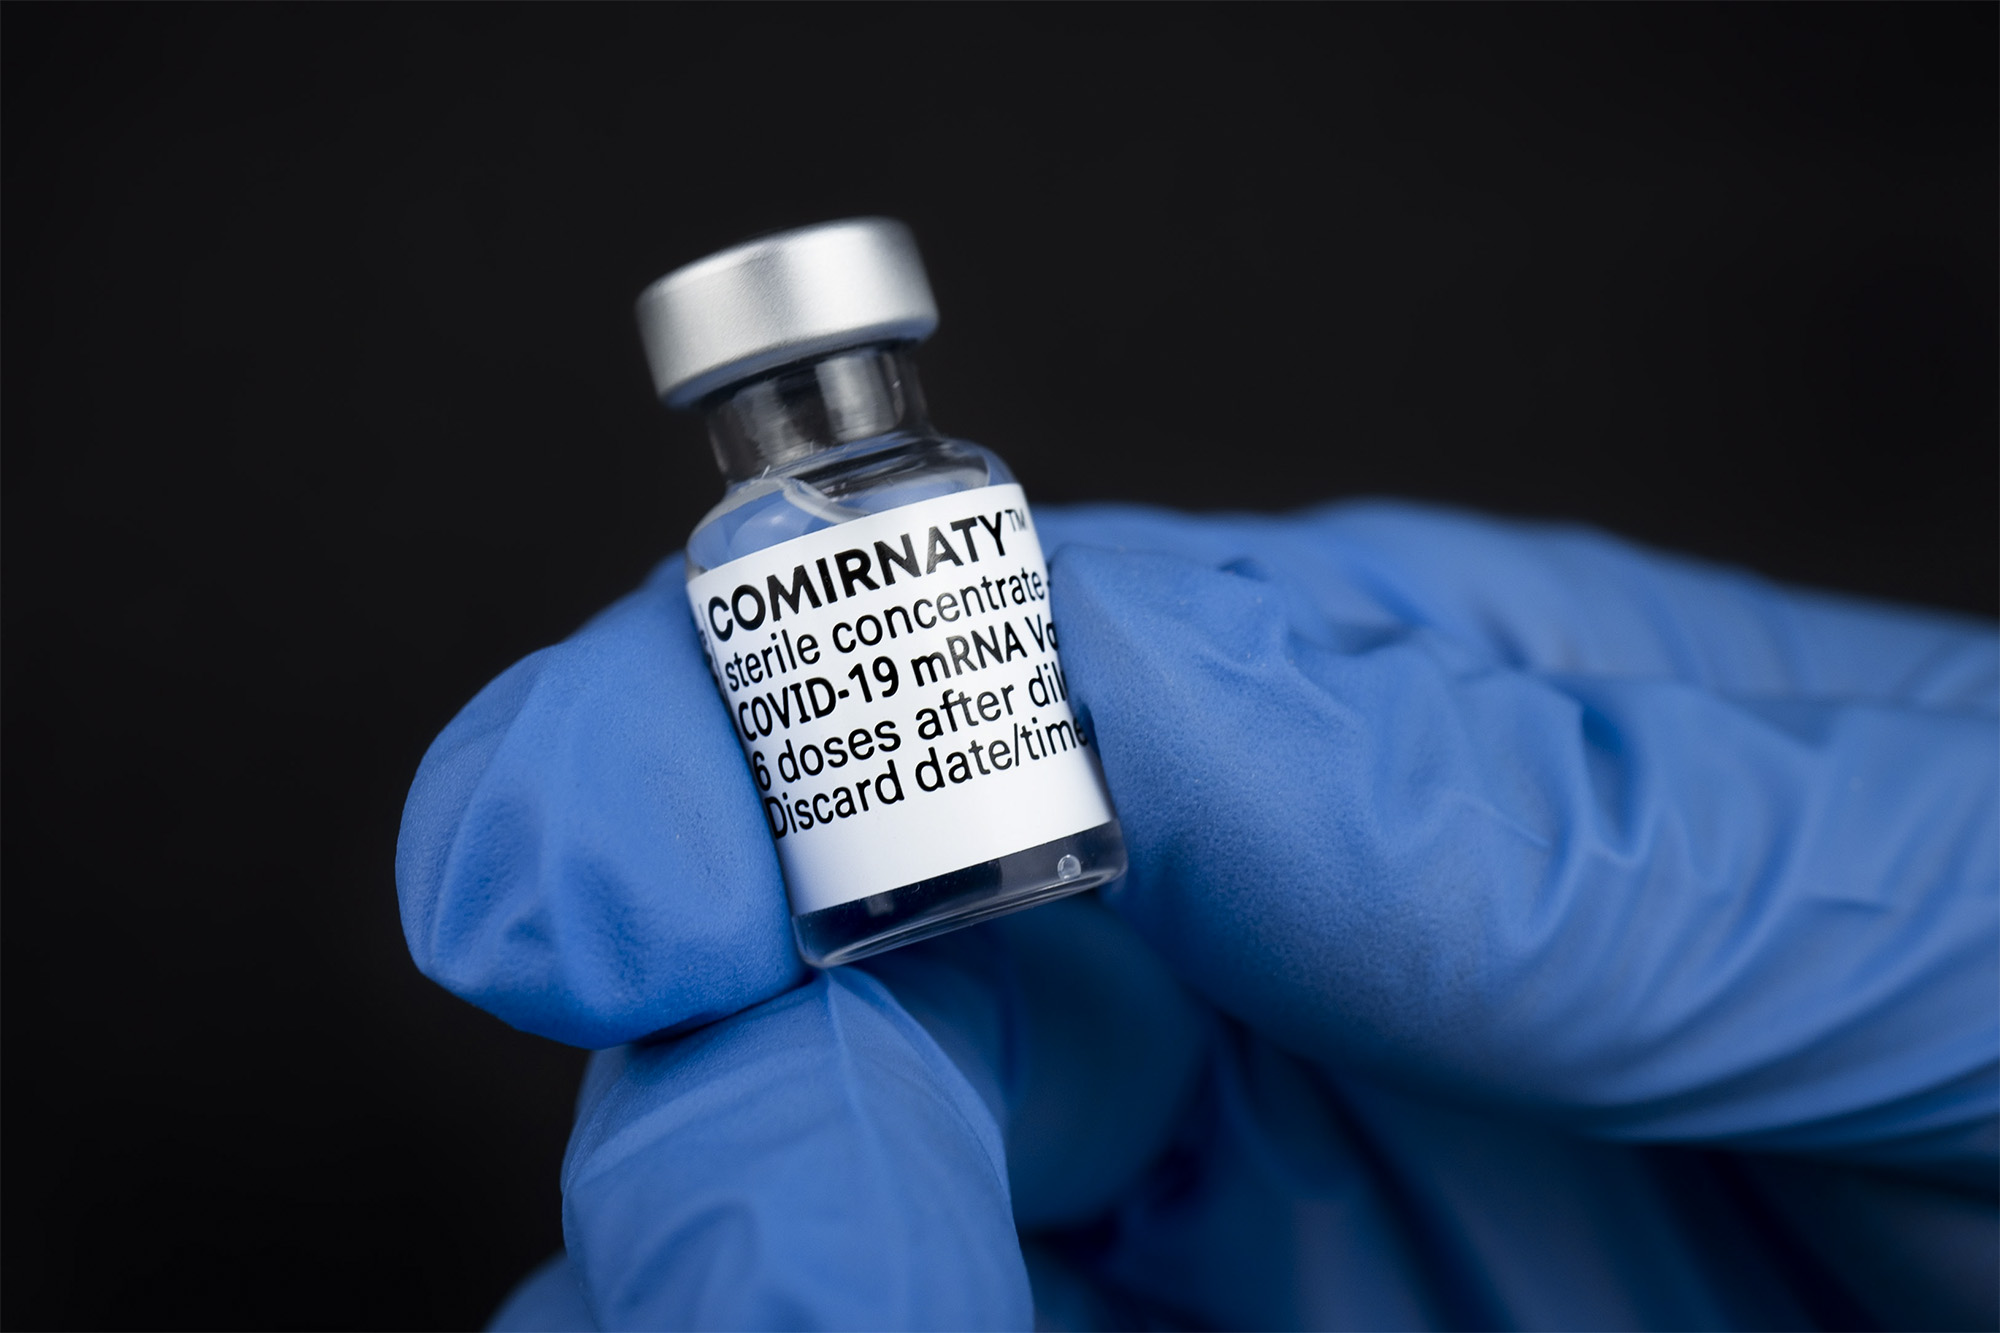 Covid-19 Vaccine vial being held 